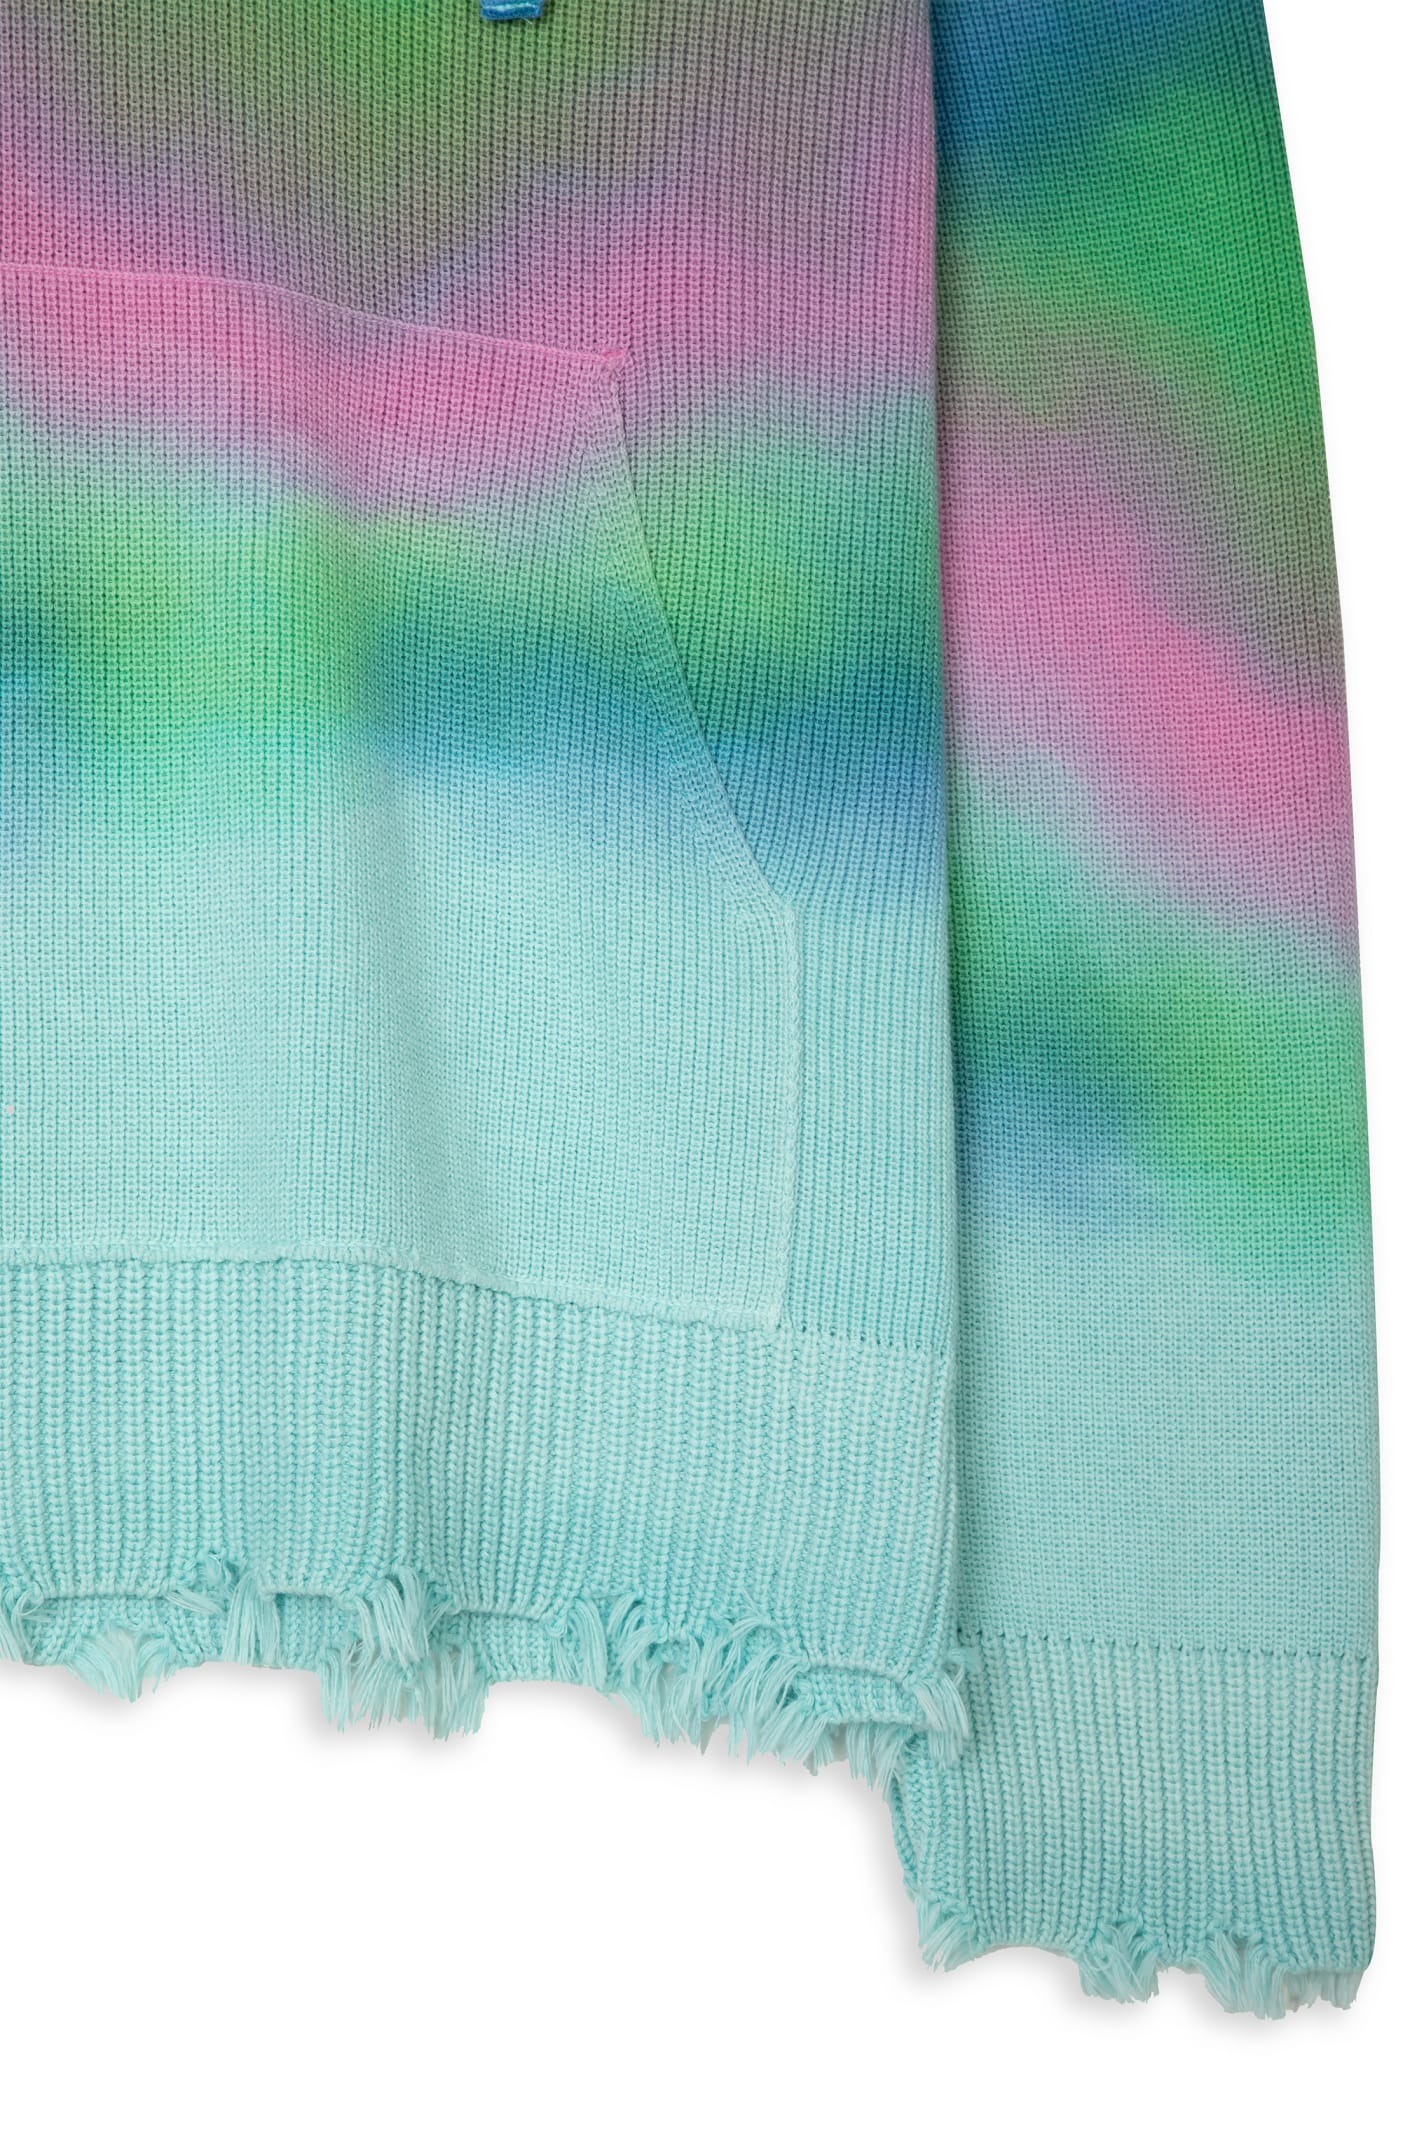 Shop Laneus Cappuccio Multicolor Print Multicolor Tie-dye Cotton Hooded Sweater